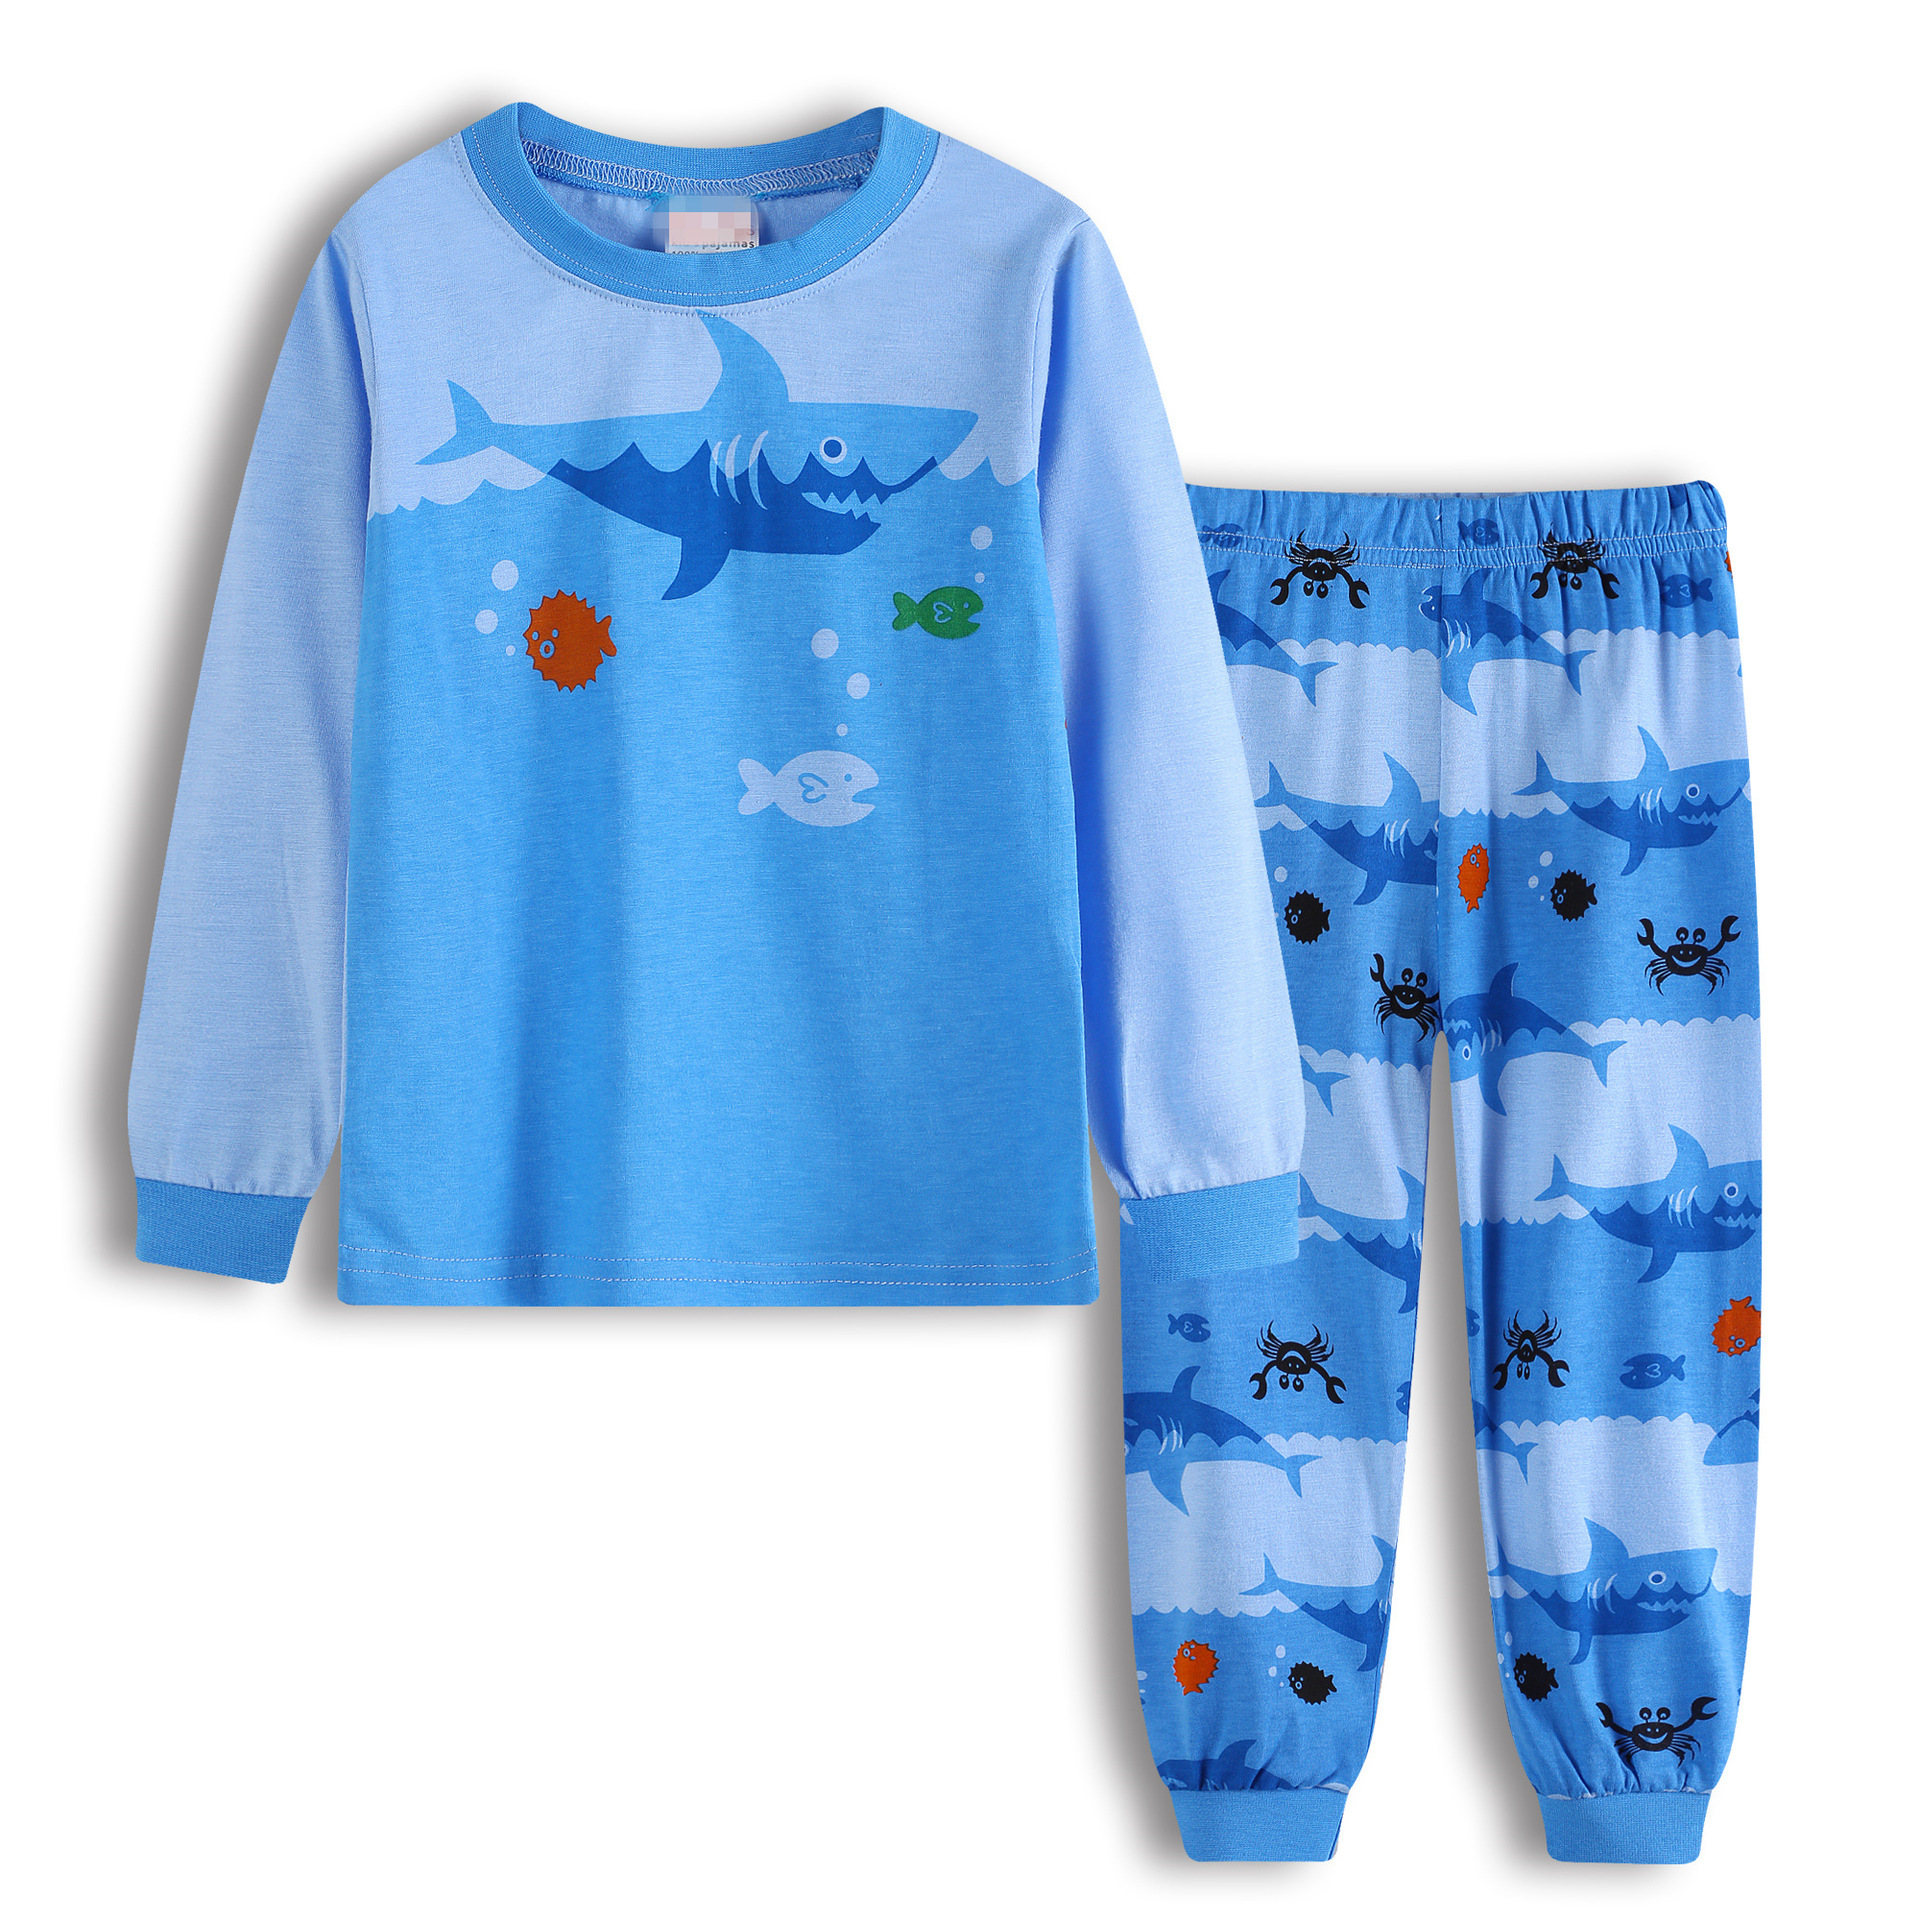 新款长袖童装男孩男童宝宝卡通蓝色鲨鱼家居服套装睡衣K239